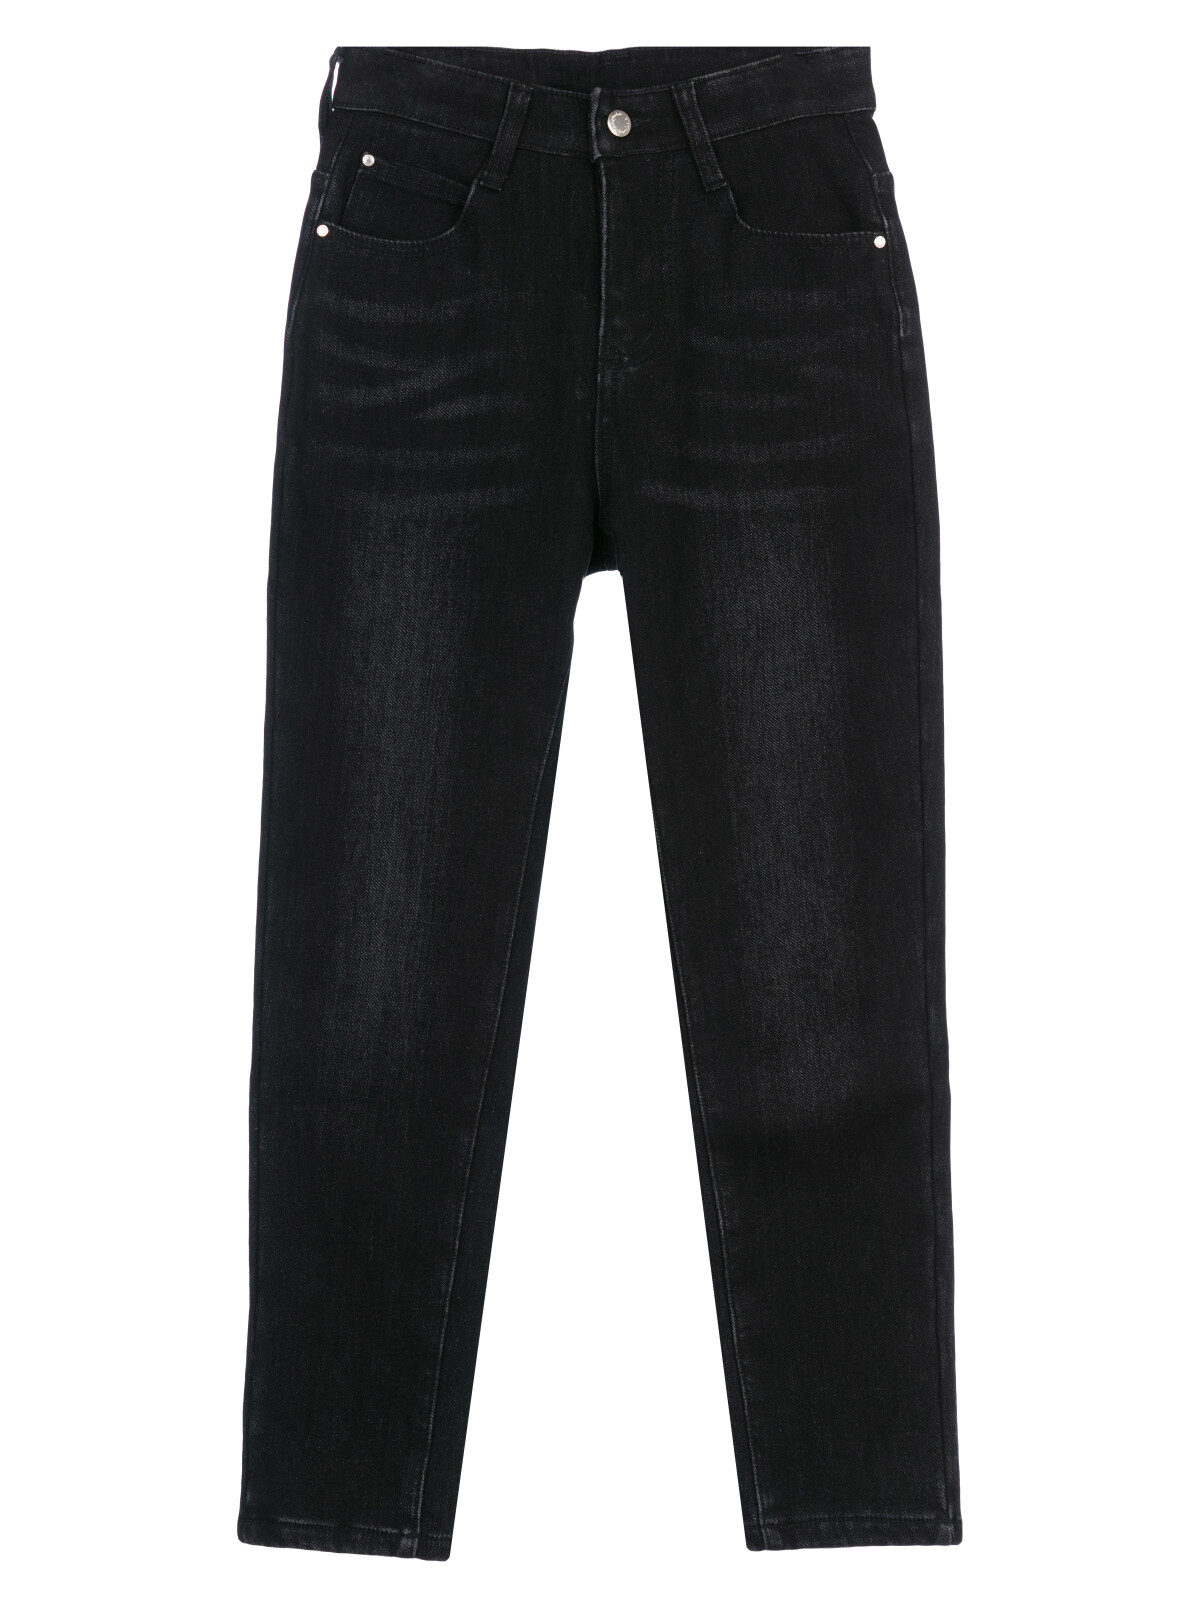 Брюки текстильные джинсовые утепленные флисом для девочек PlayToday, черный, 134